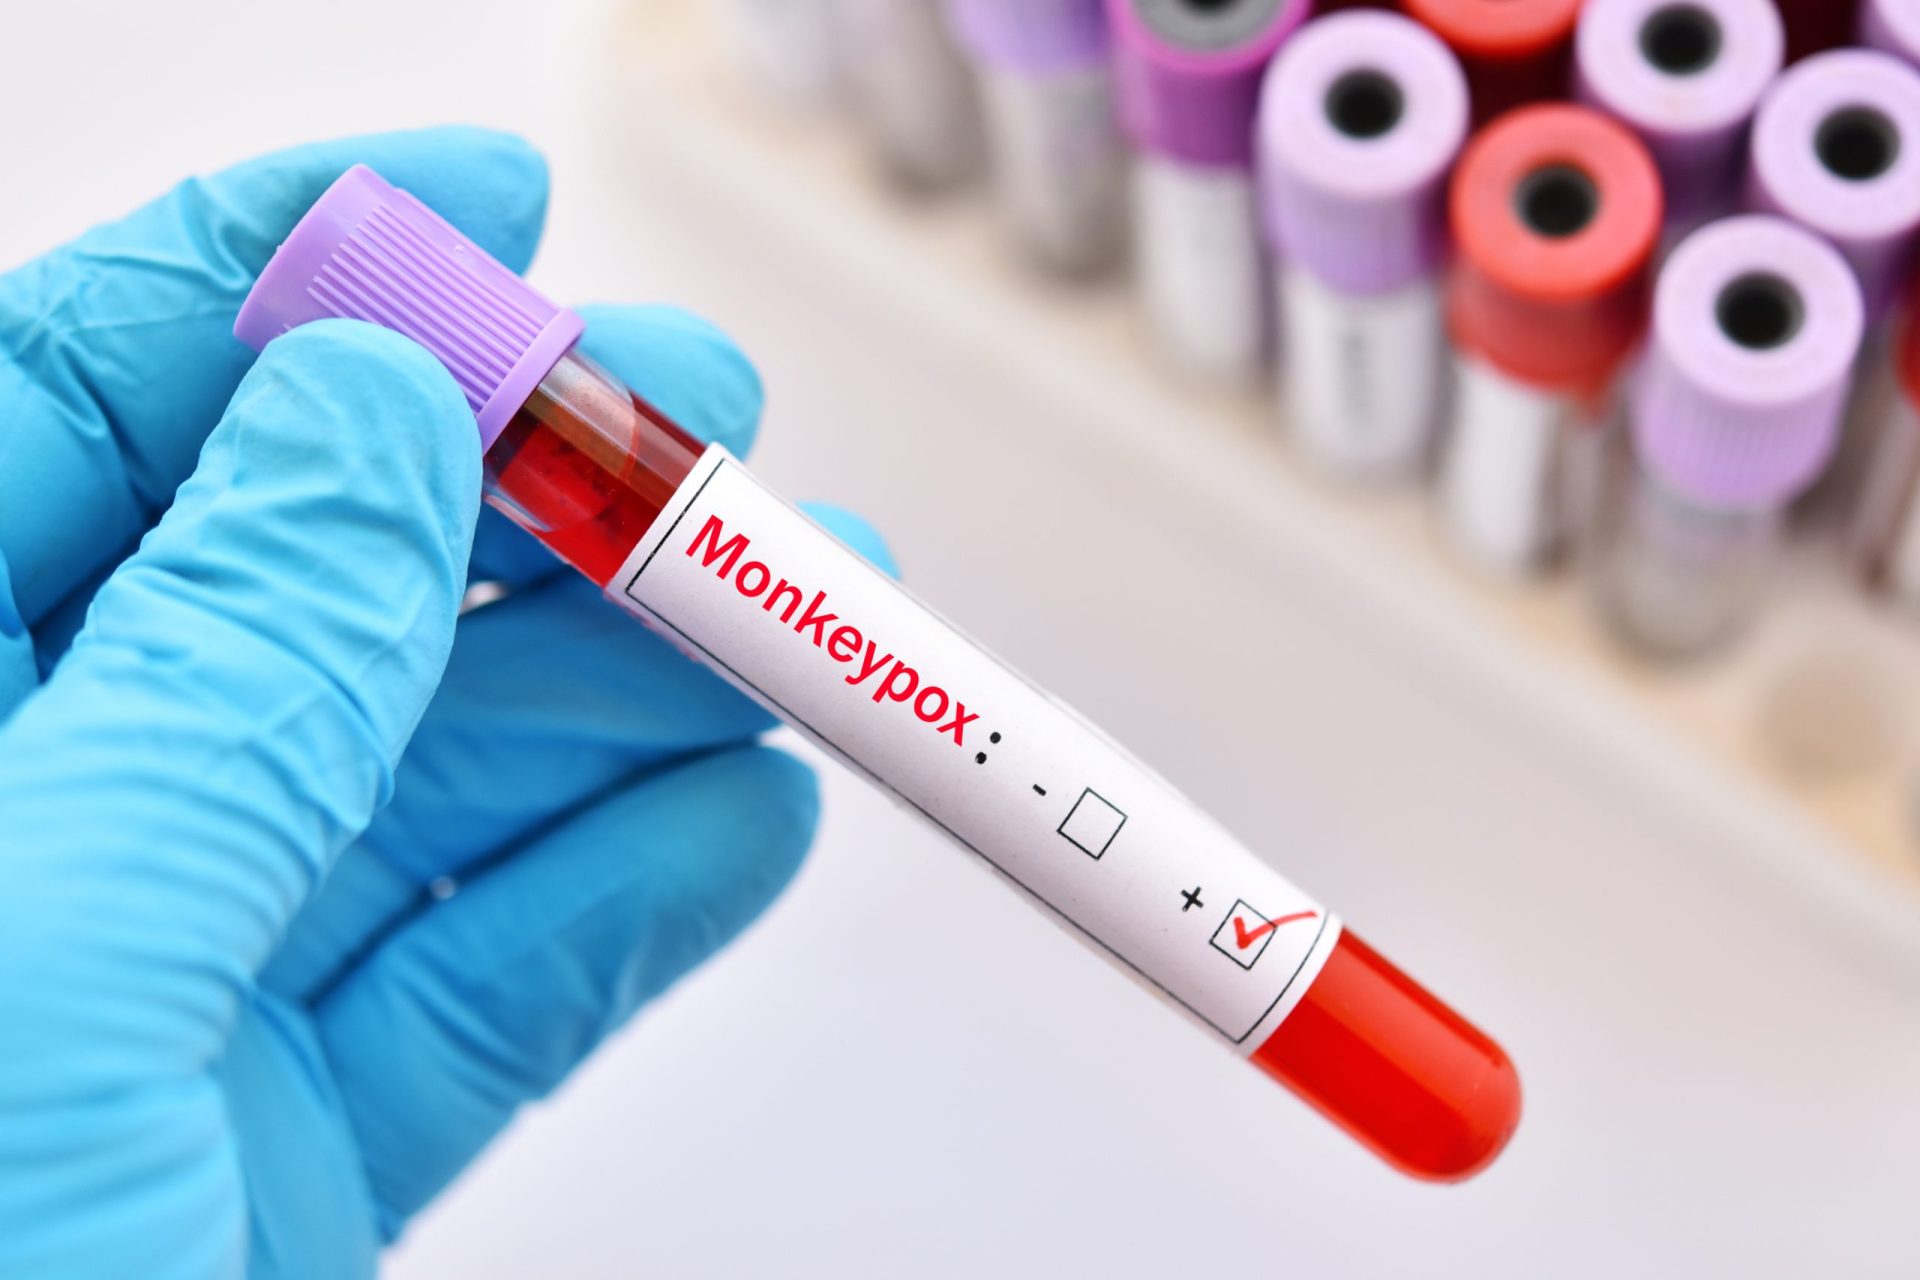 DGS confirma mais 13 casos de infeção pelo vírus Monkeypox